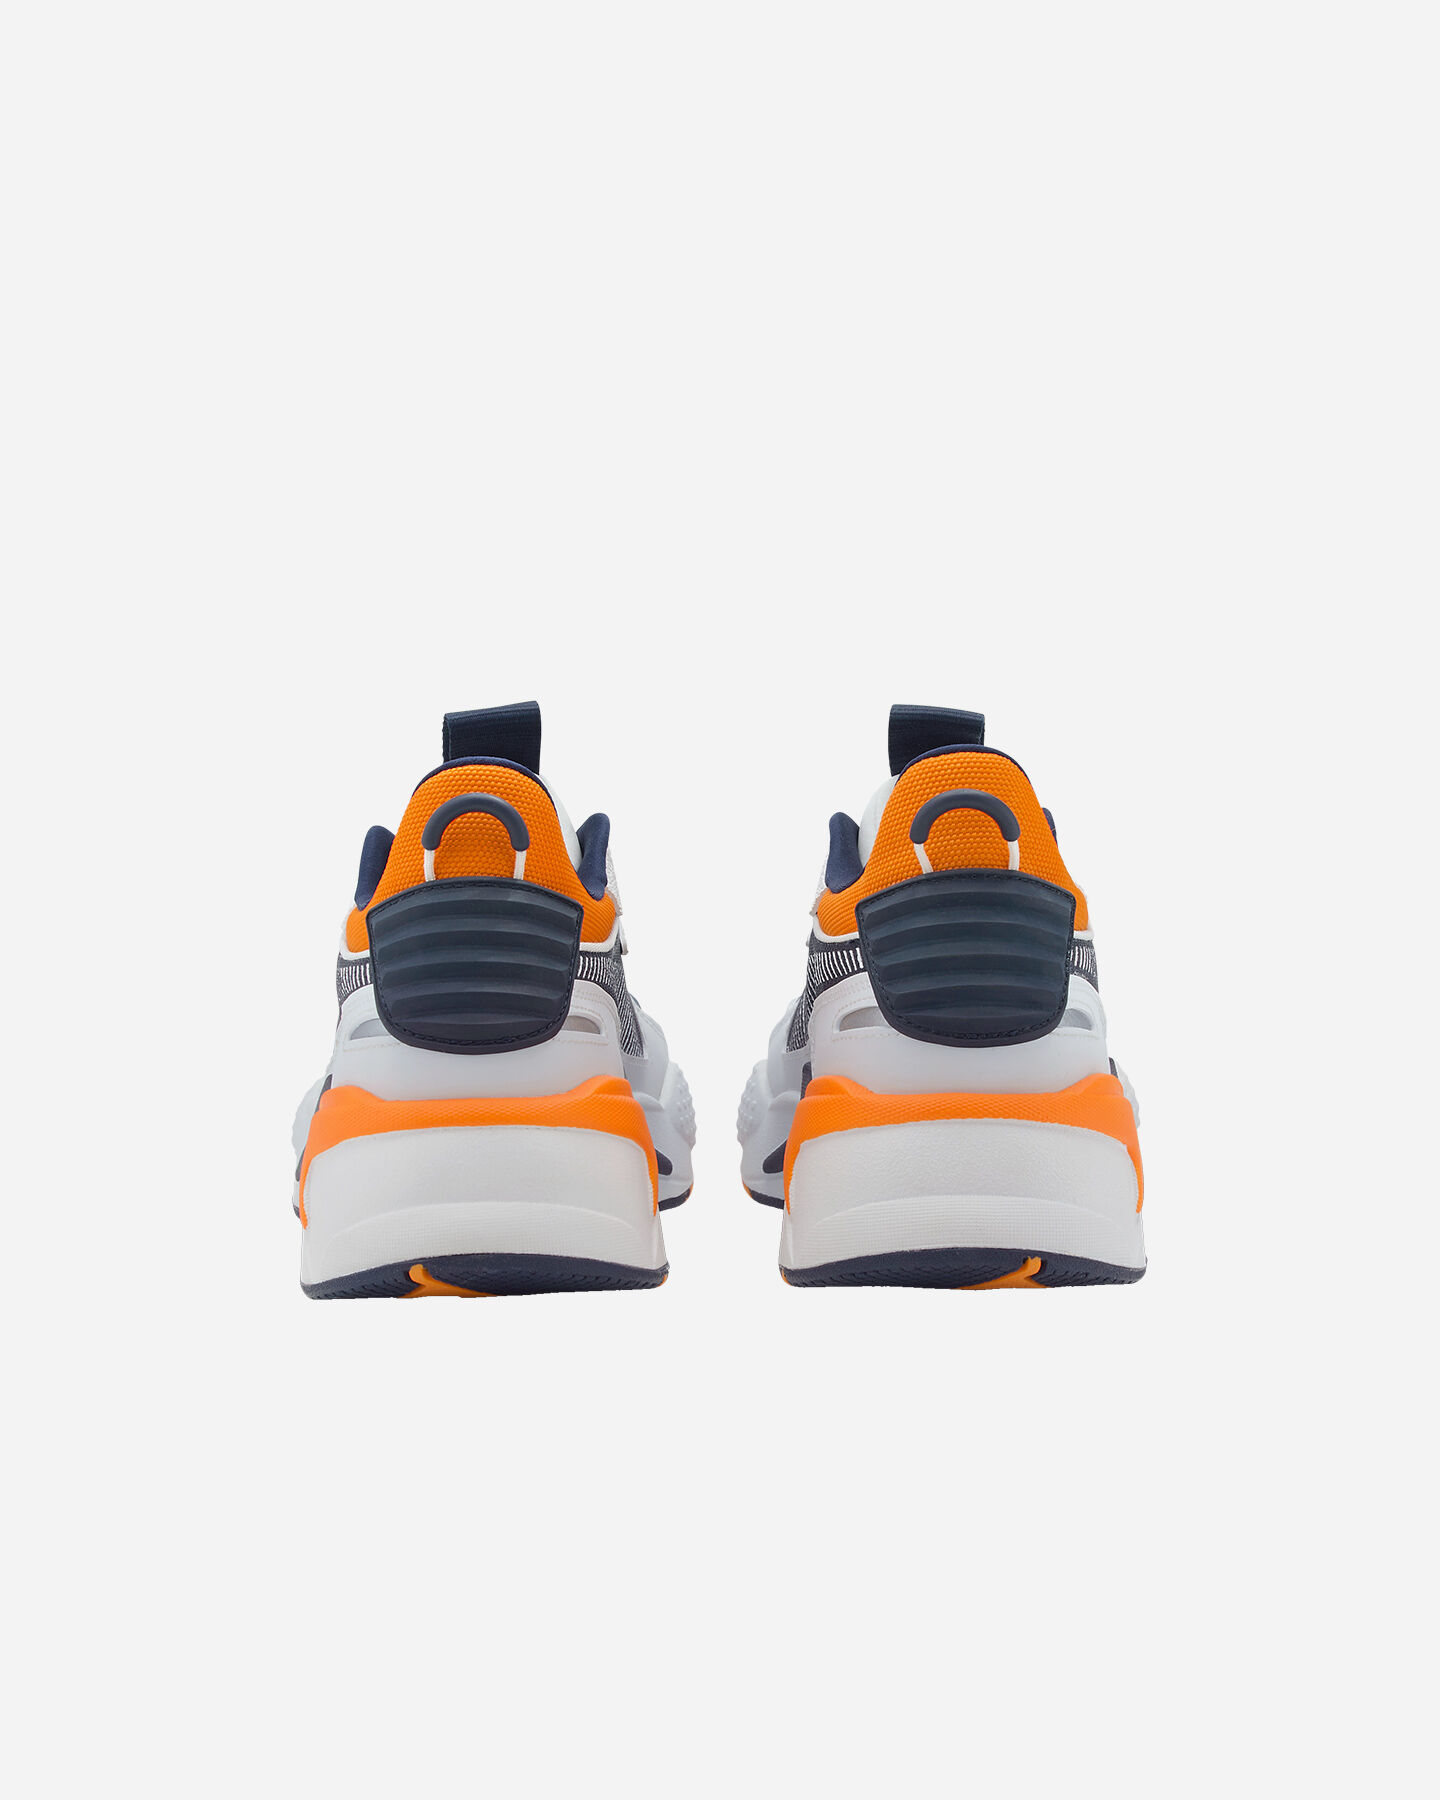  Scarpe sneakers PUMA RS-X HARD DRIVE M S5234213|08|6 scatto 4